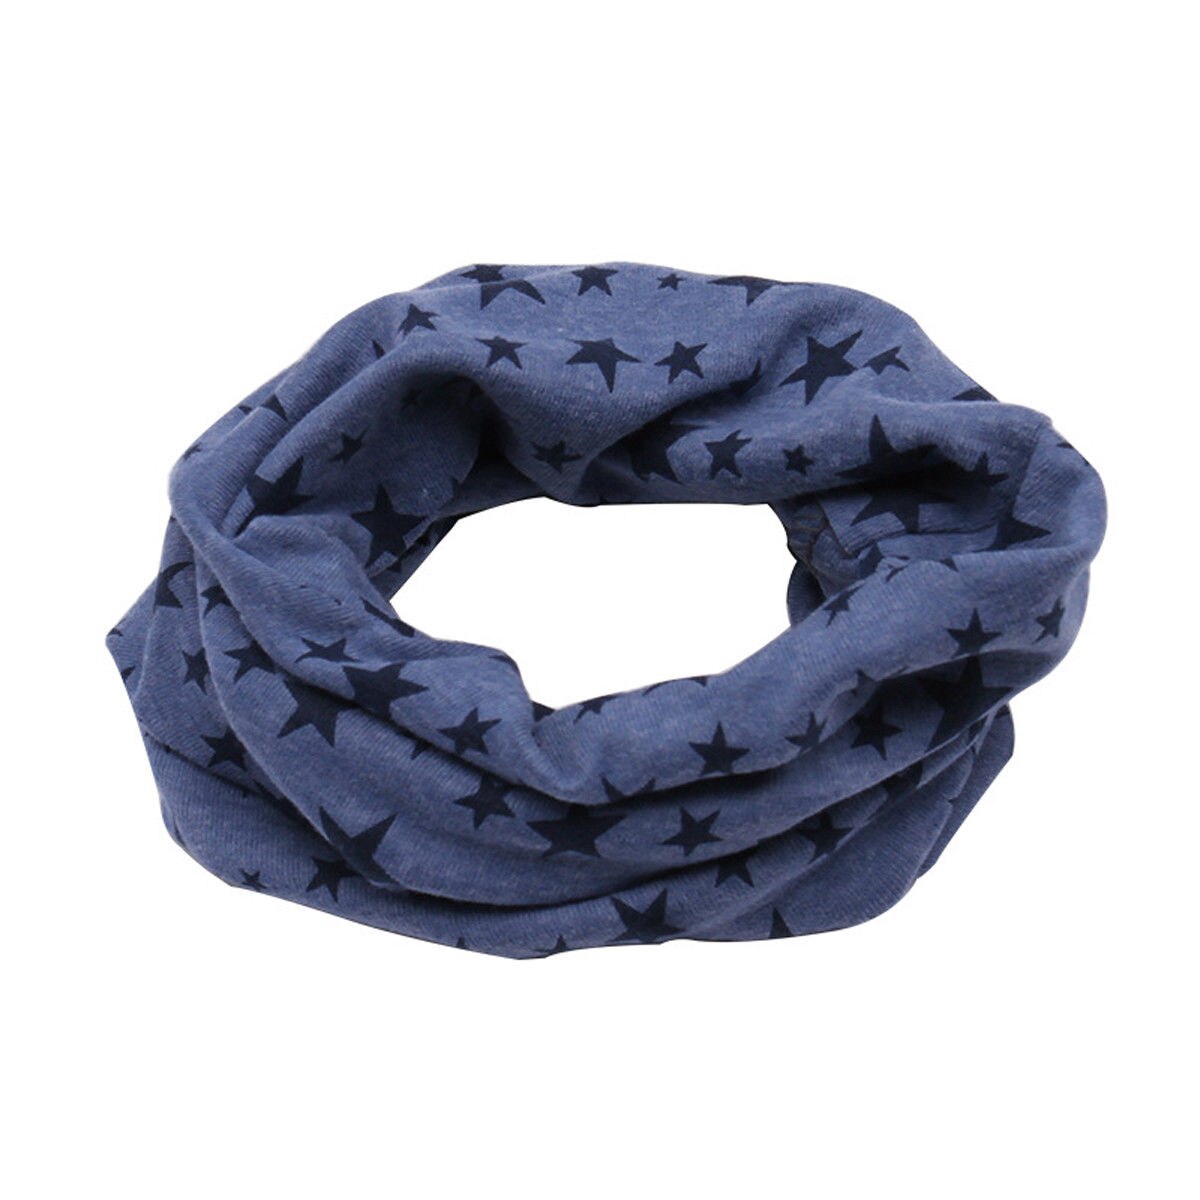 Barn børn vinter varm bomuld snood tørklæde sjal drenge piger hals varm halstørklæde: Marine blå